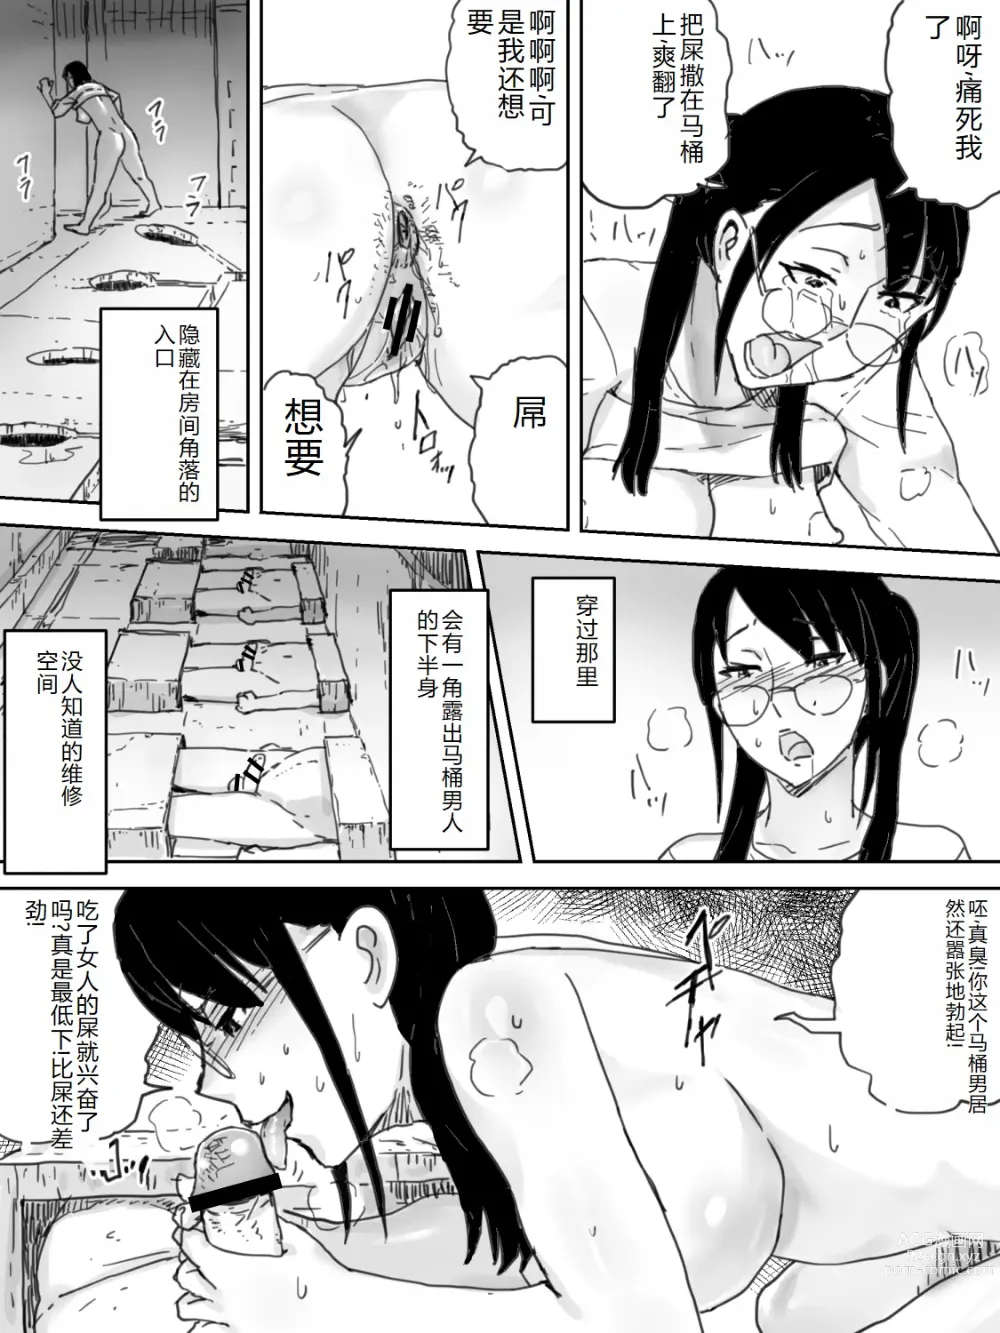 Page 13 of doujinshi Ningen Benki